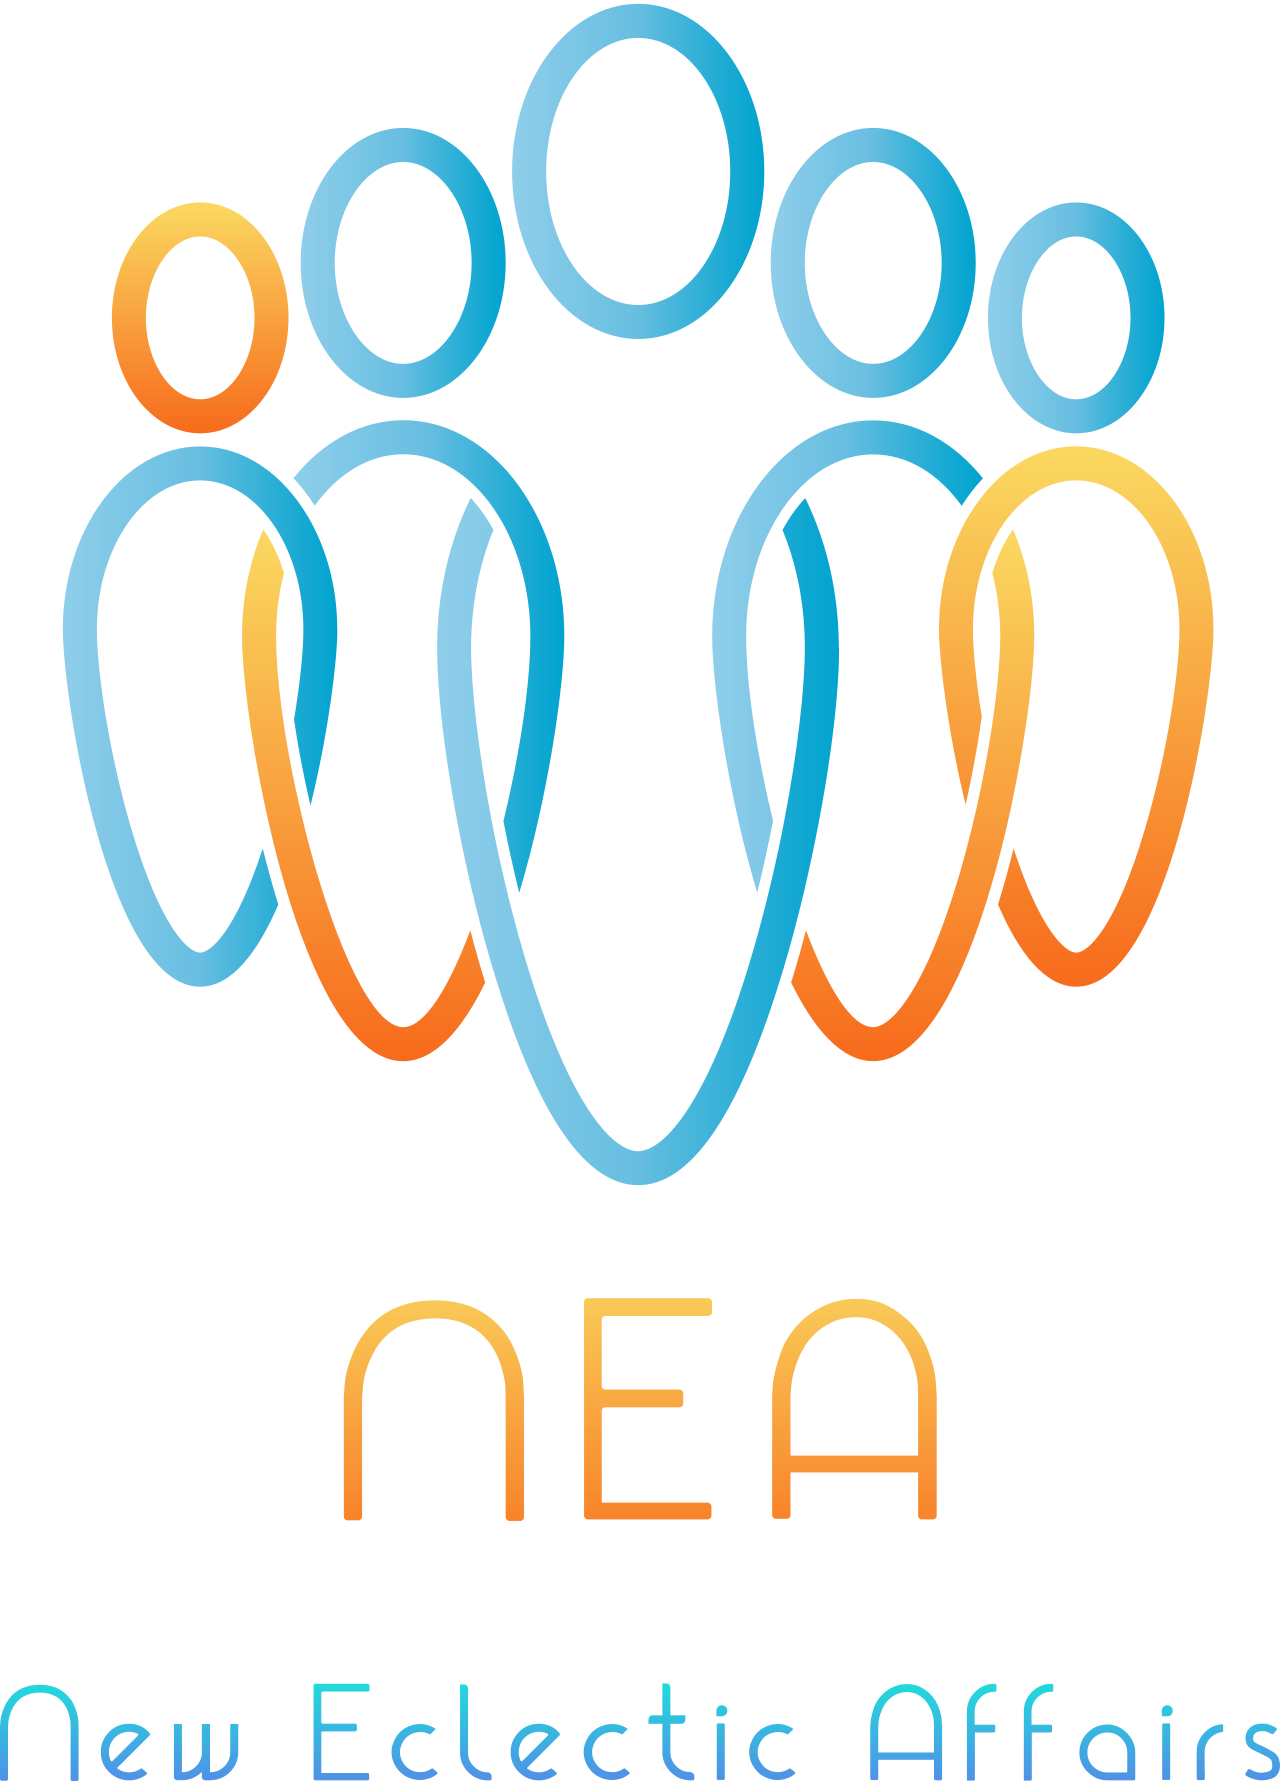 NEA's web page